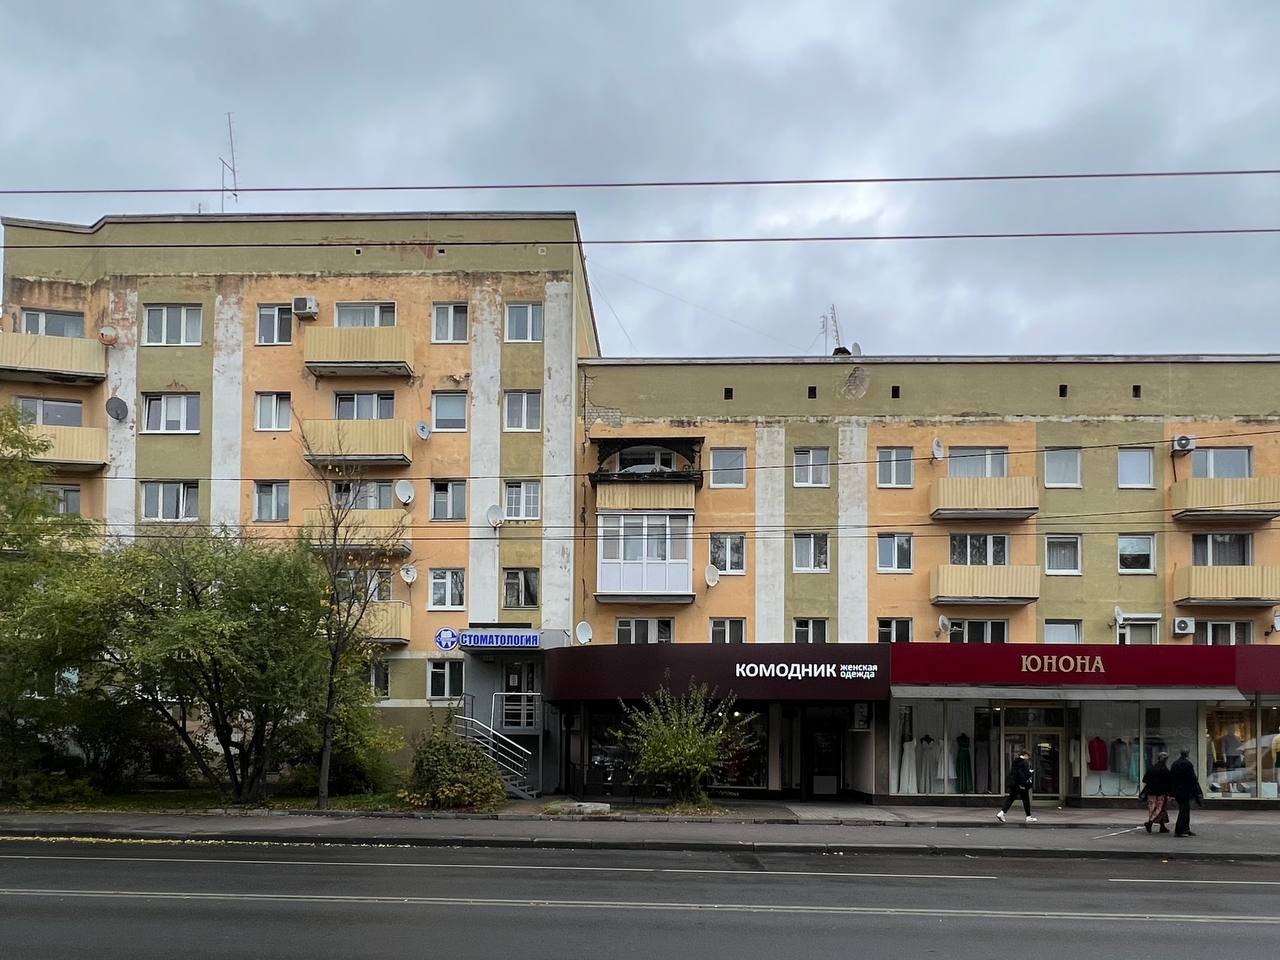 Опубликовали концепцию дома на улице Театральной, 36-40, 42 в Калининграде